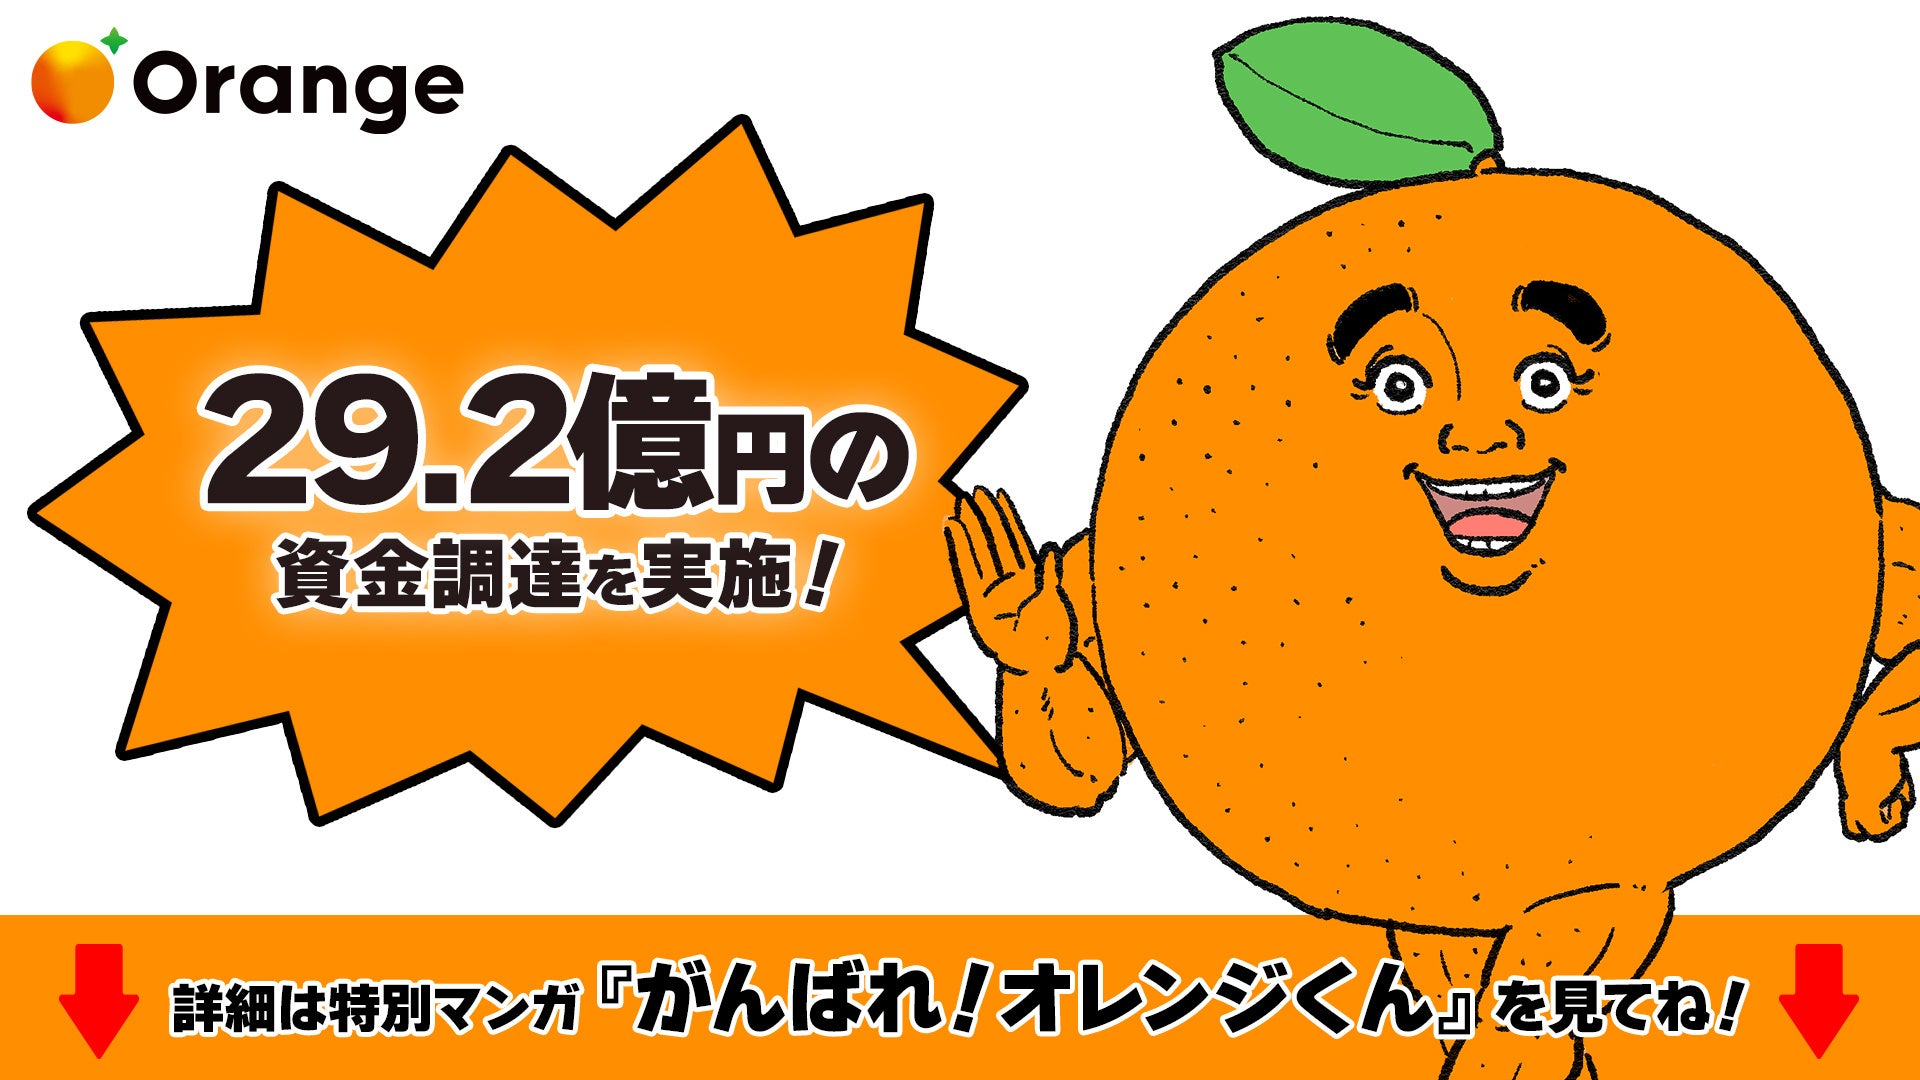 オレンジ、総額29.2億円のプレシリーズA資金調達を実施